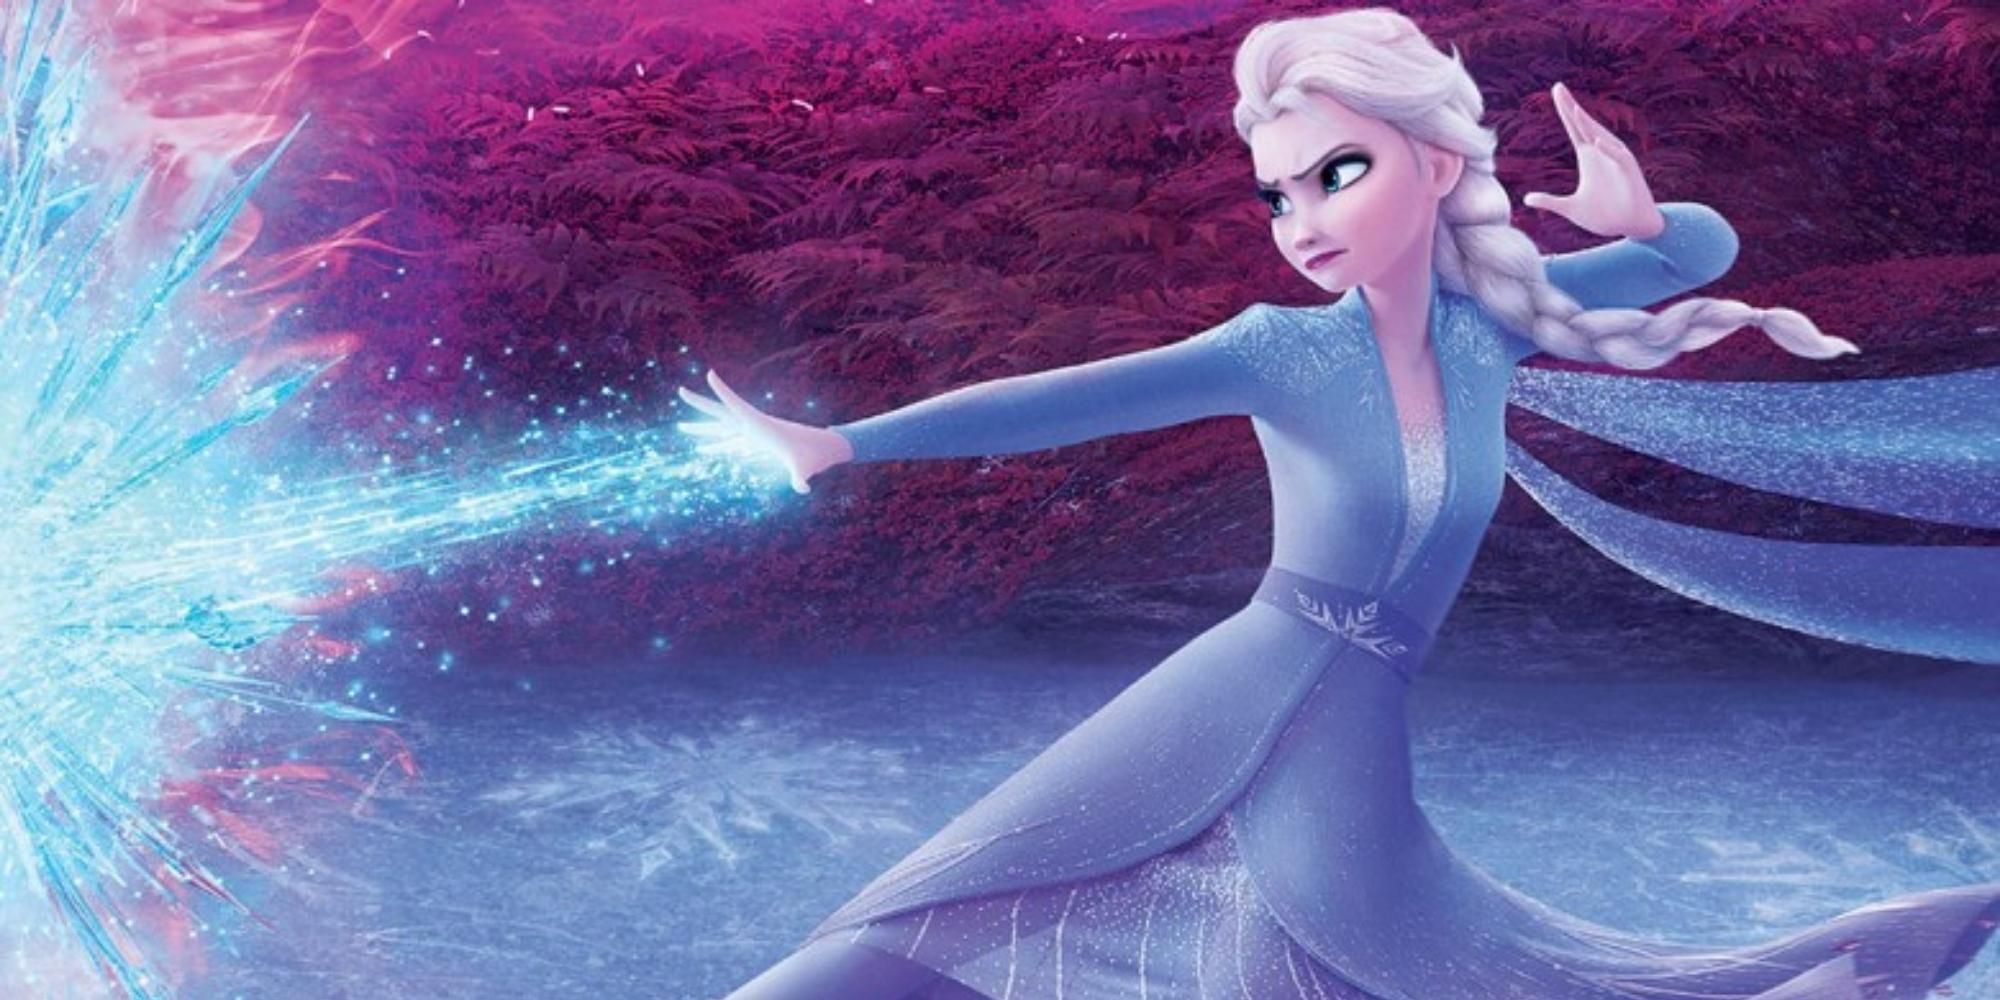 Elsa uses her powers in Frozen